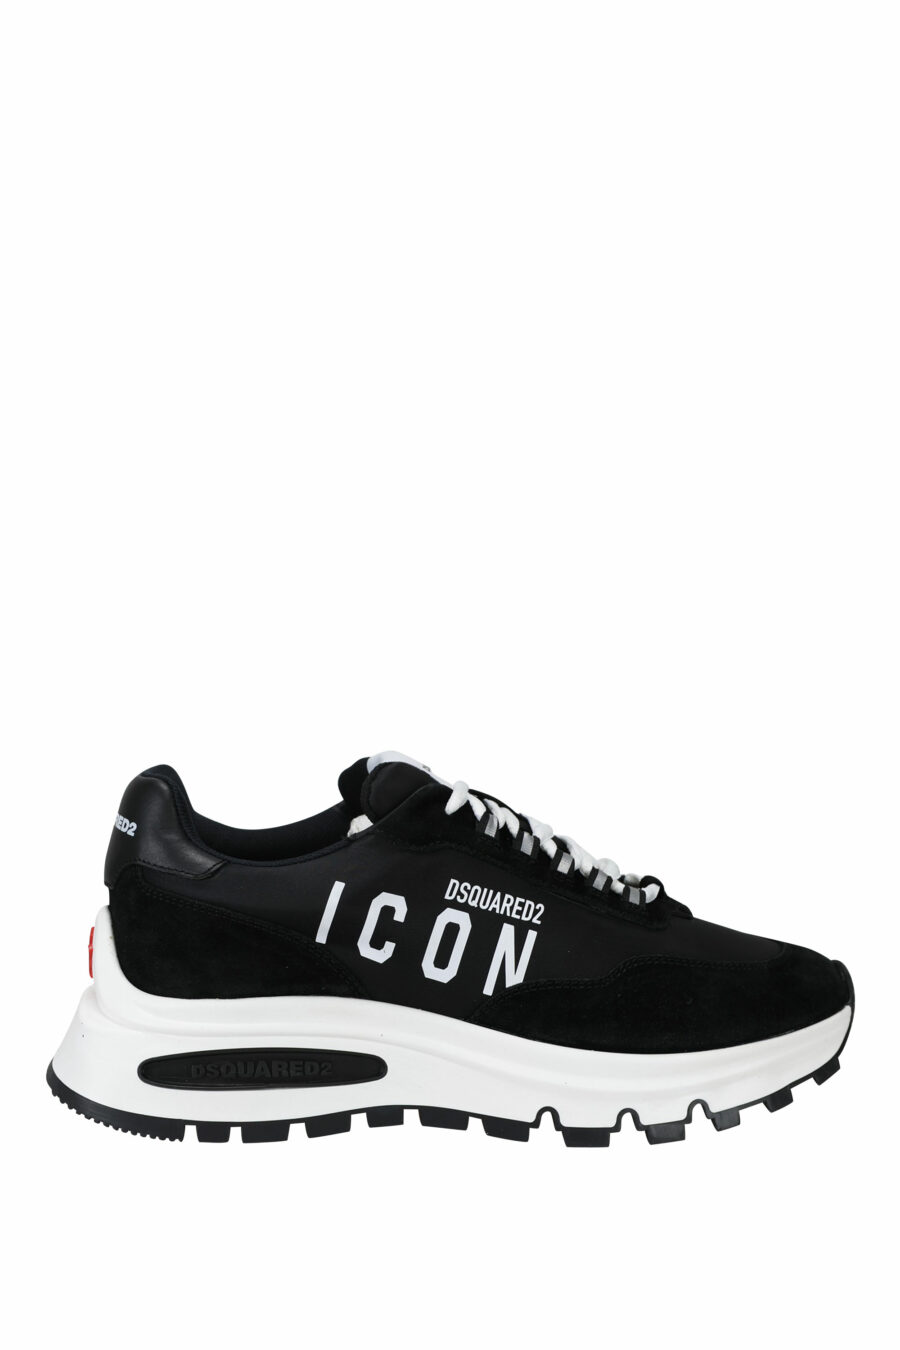 Zapatillas negras con minilogo "icon" y suela blanca con cámara de aire - 8055777249321